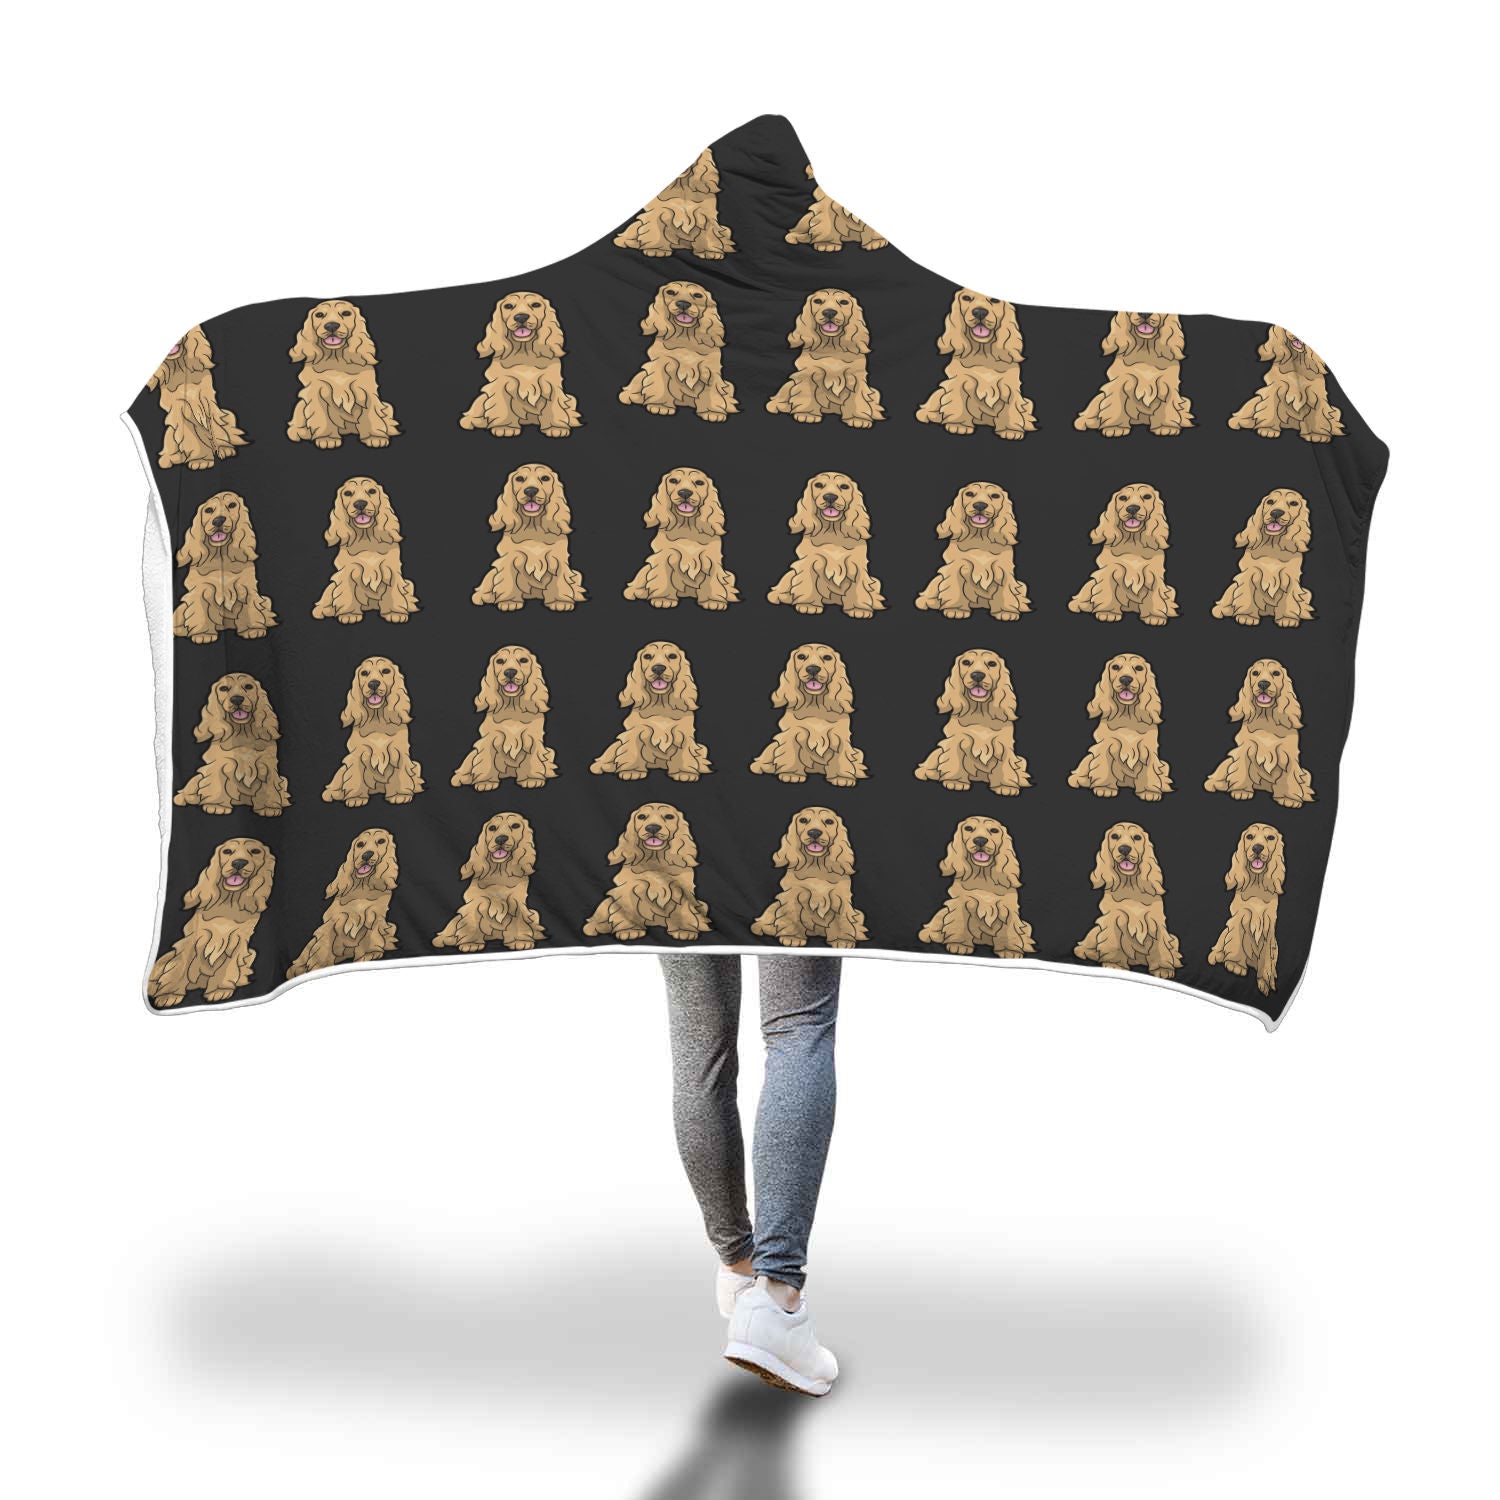 Cocker Spaniel Hooded Blanket